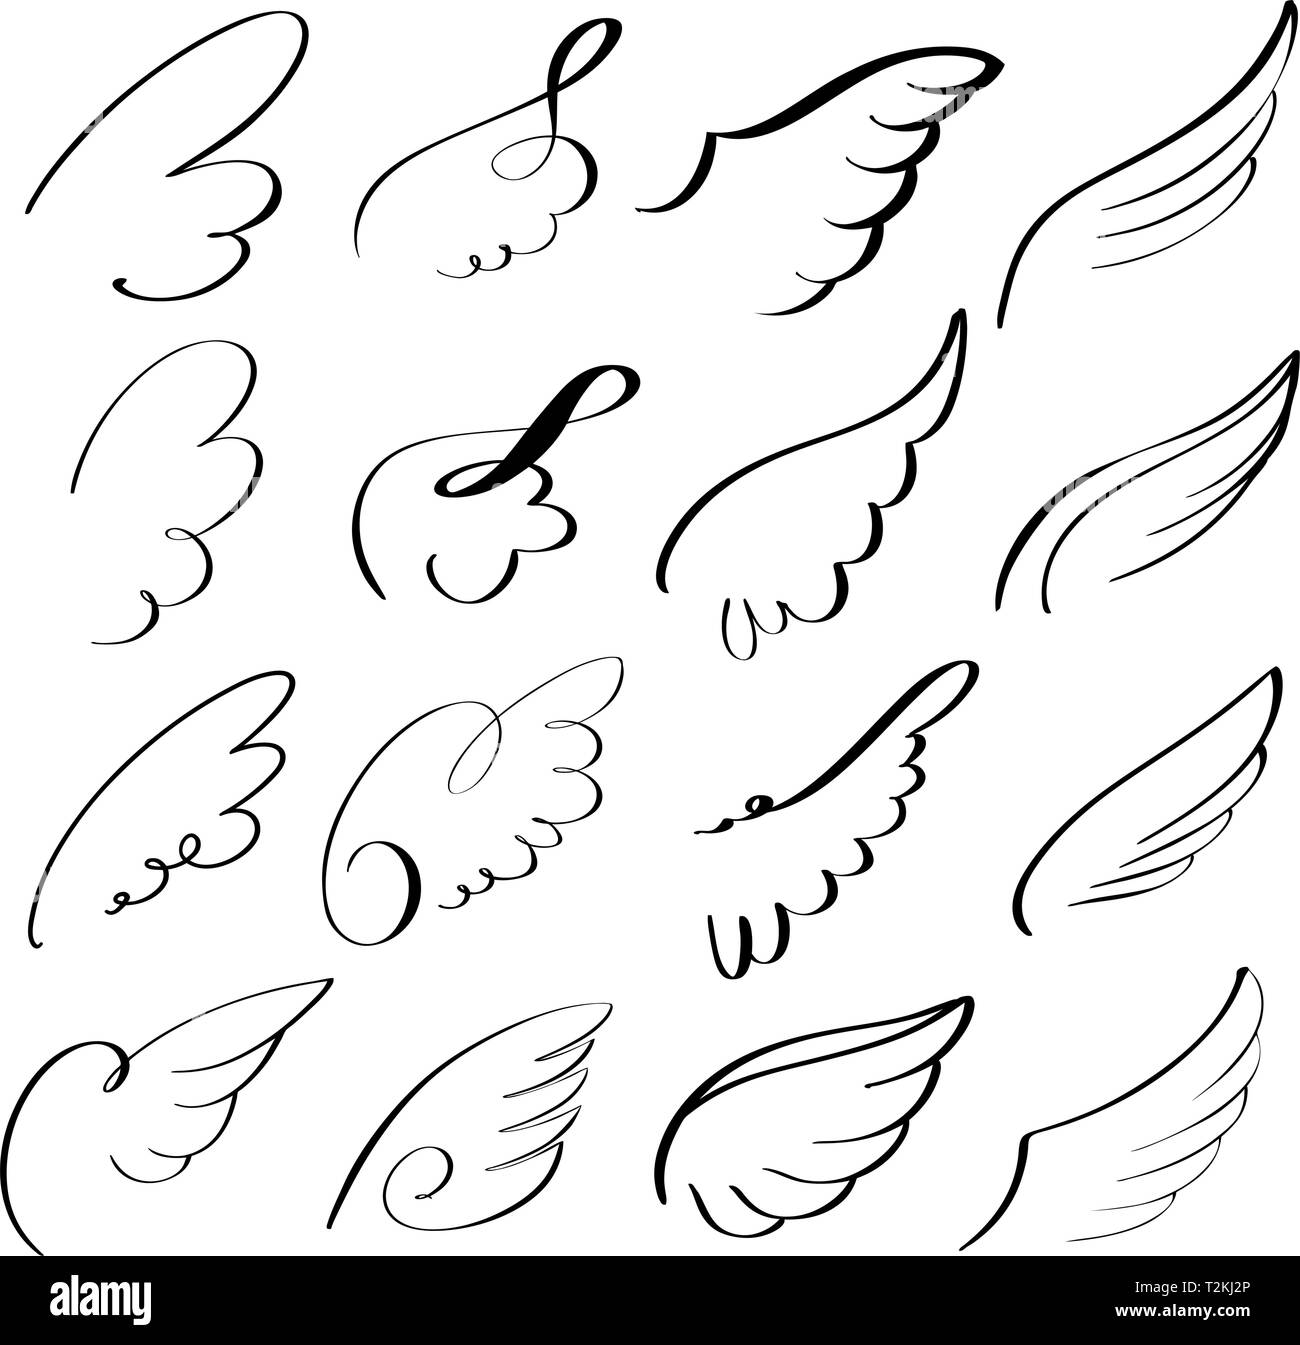 Colombe volant résumé jeu de croquis icon collection cartoon vector illustration croquis dessinés à la main. Illustration de Vecteur